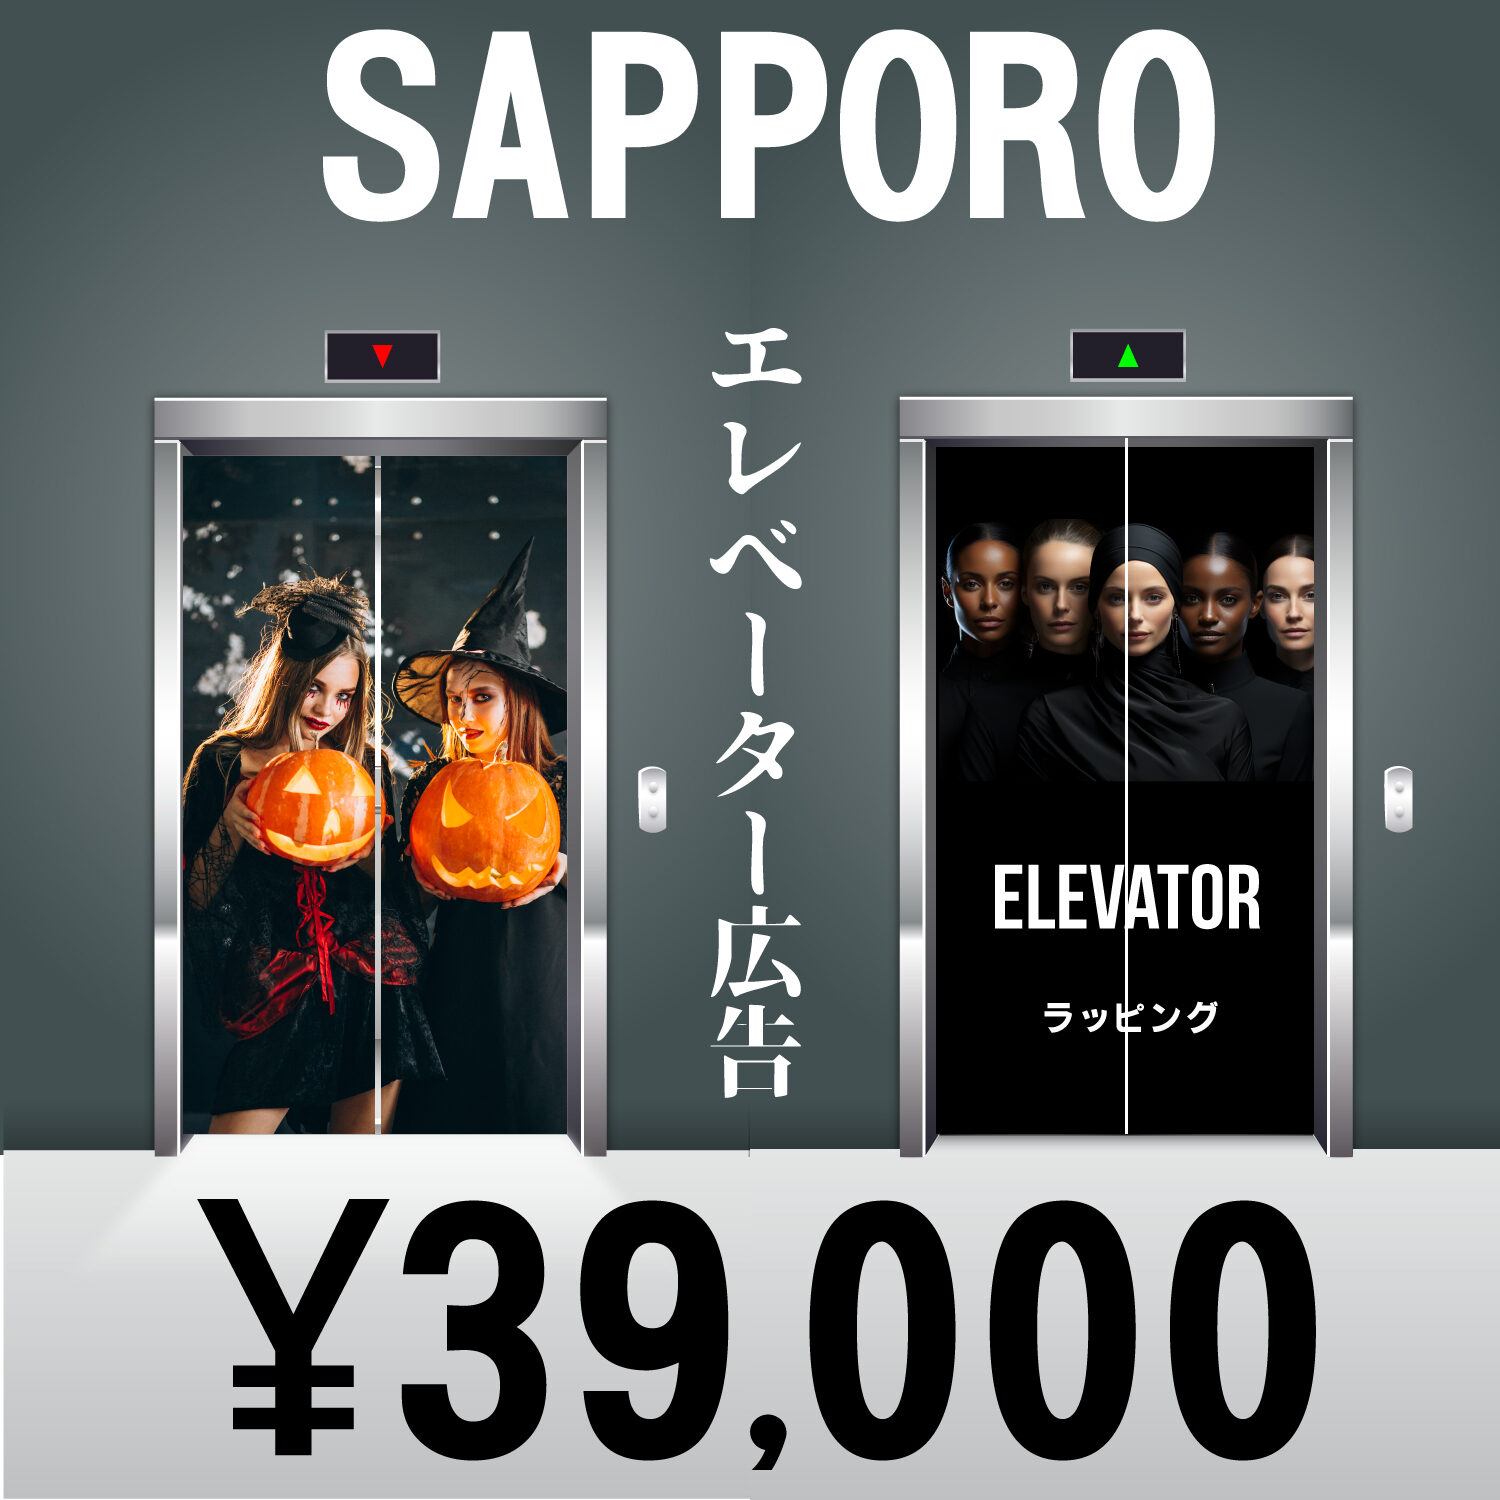 エレベーター広告制作の EVラッピング札幌.com